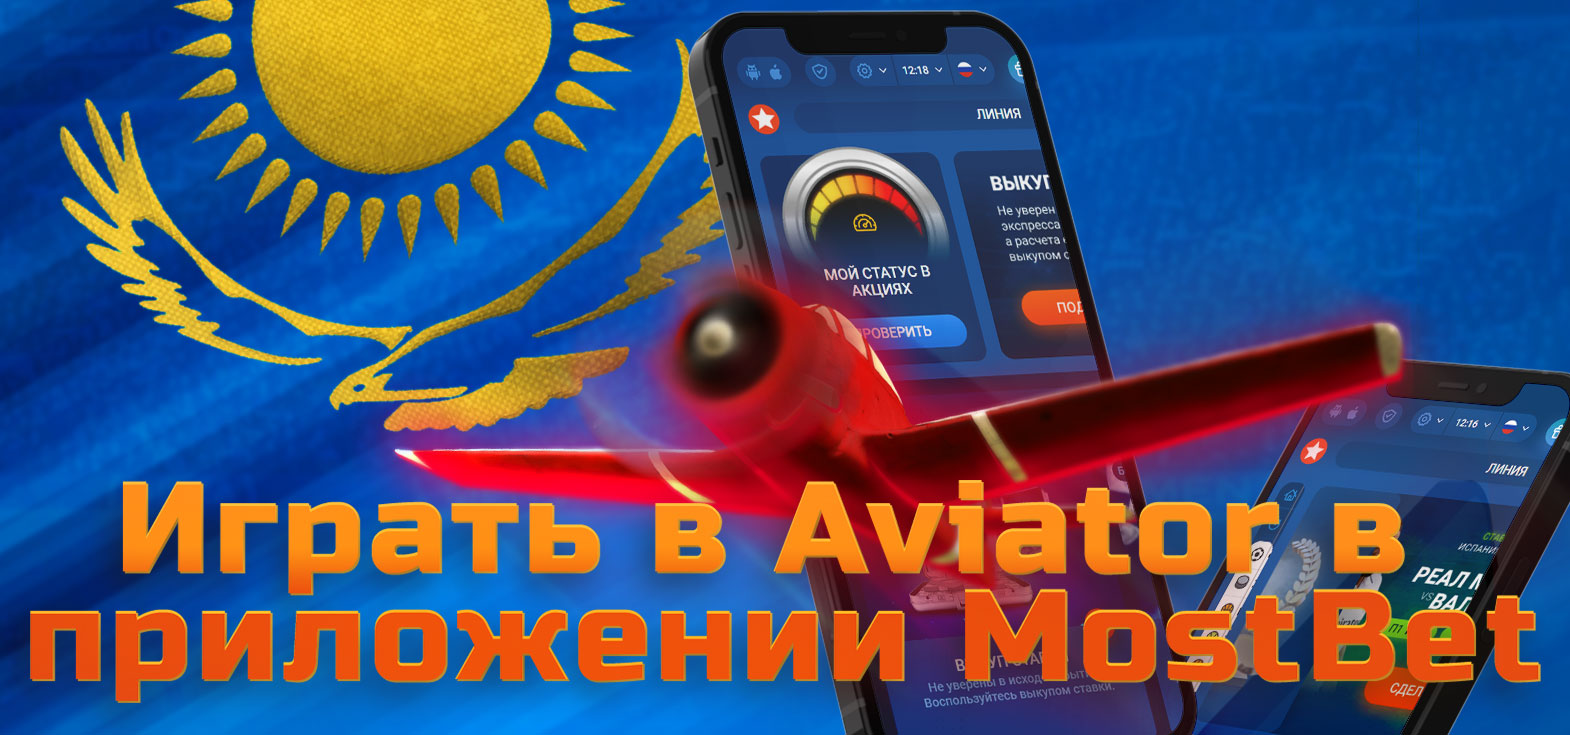 Вся необходимая информация об игре в Aviator с помощью мобильного приложения Mostbet.